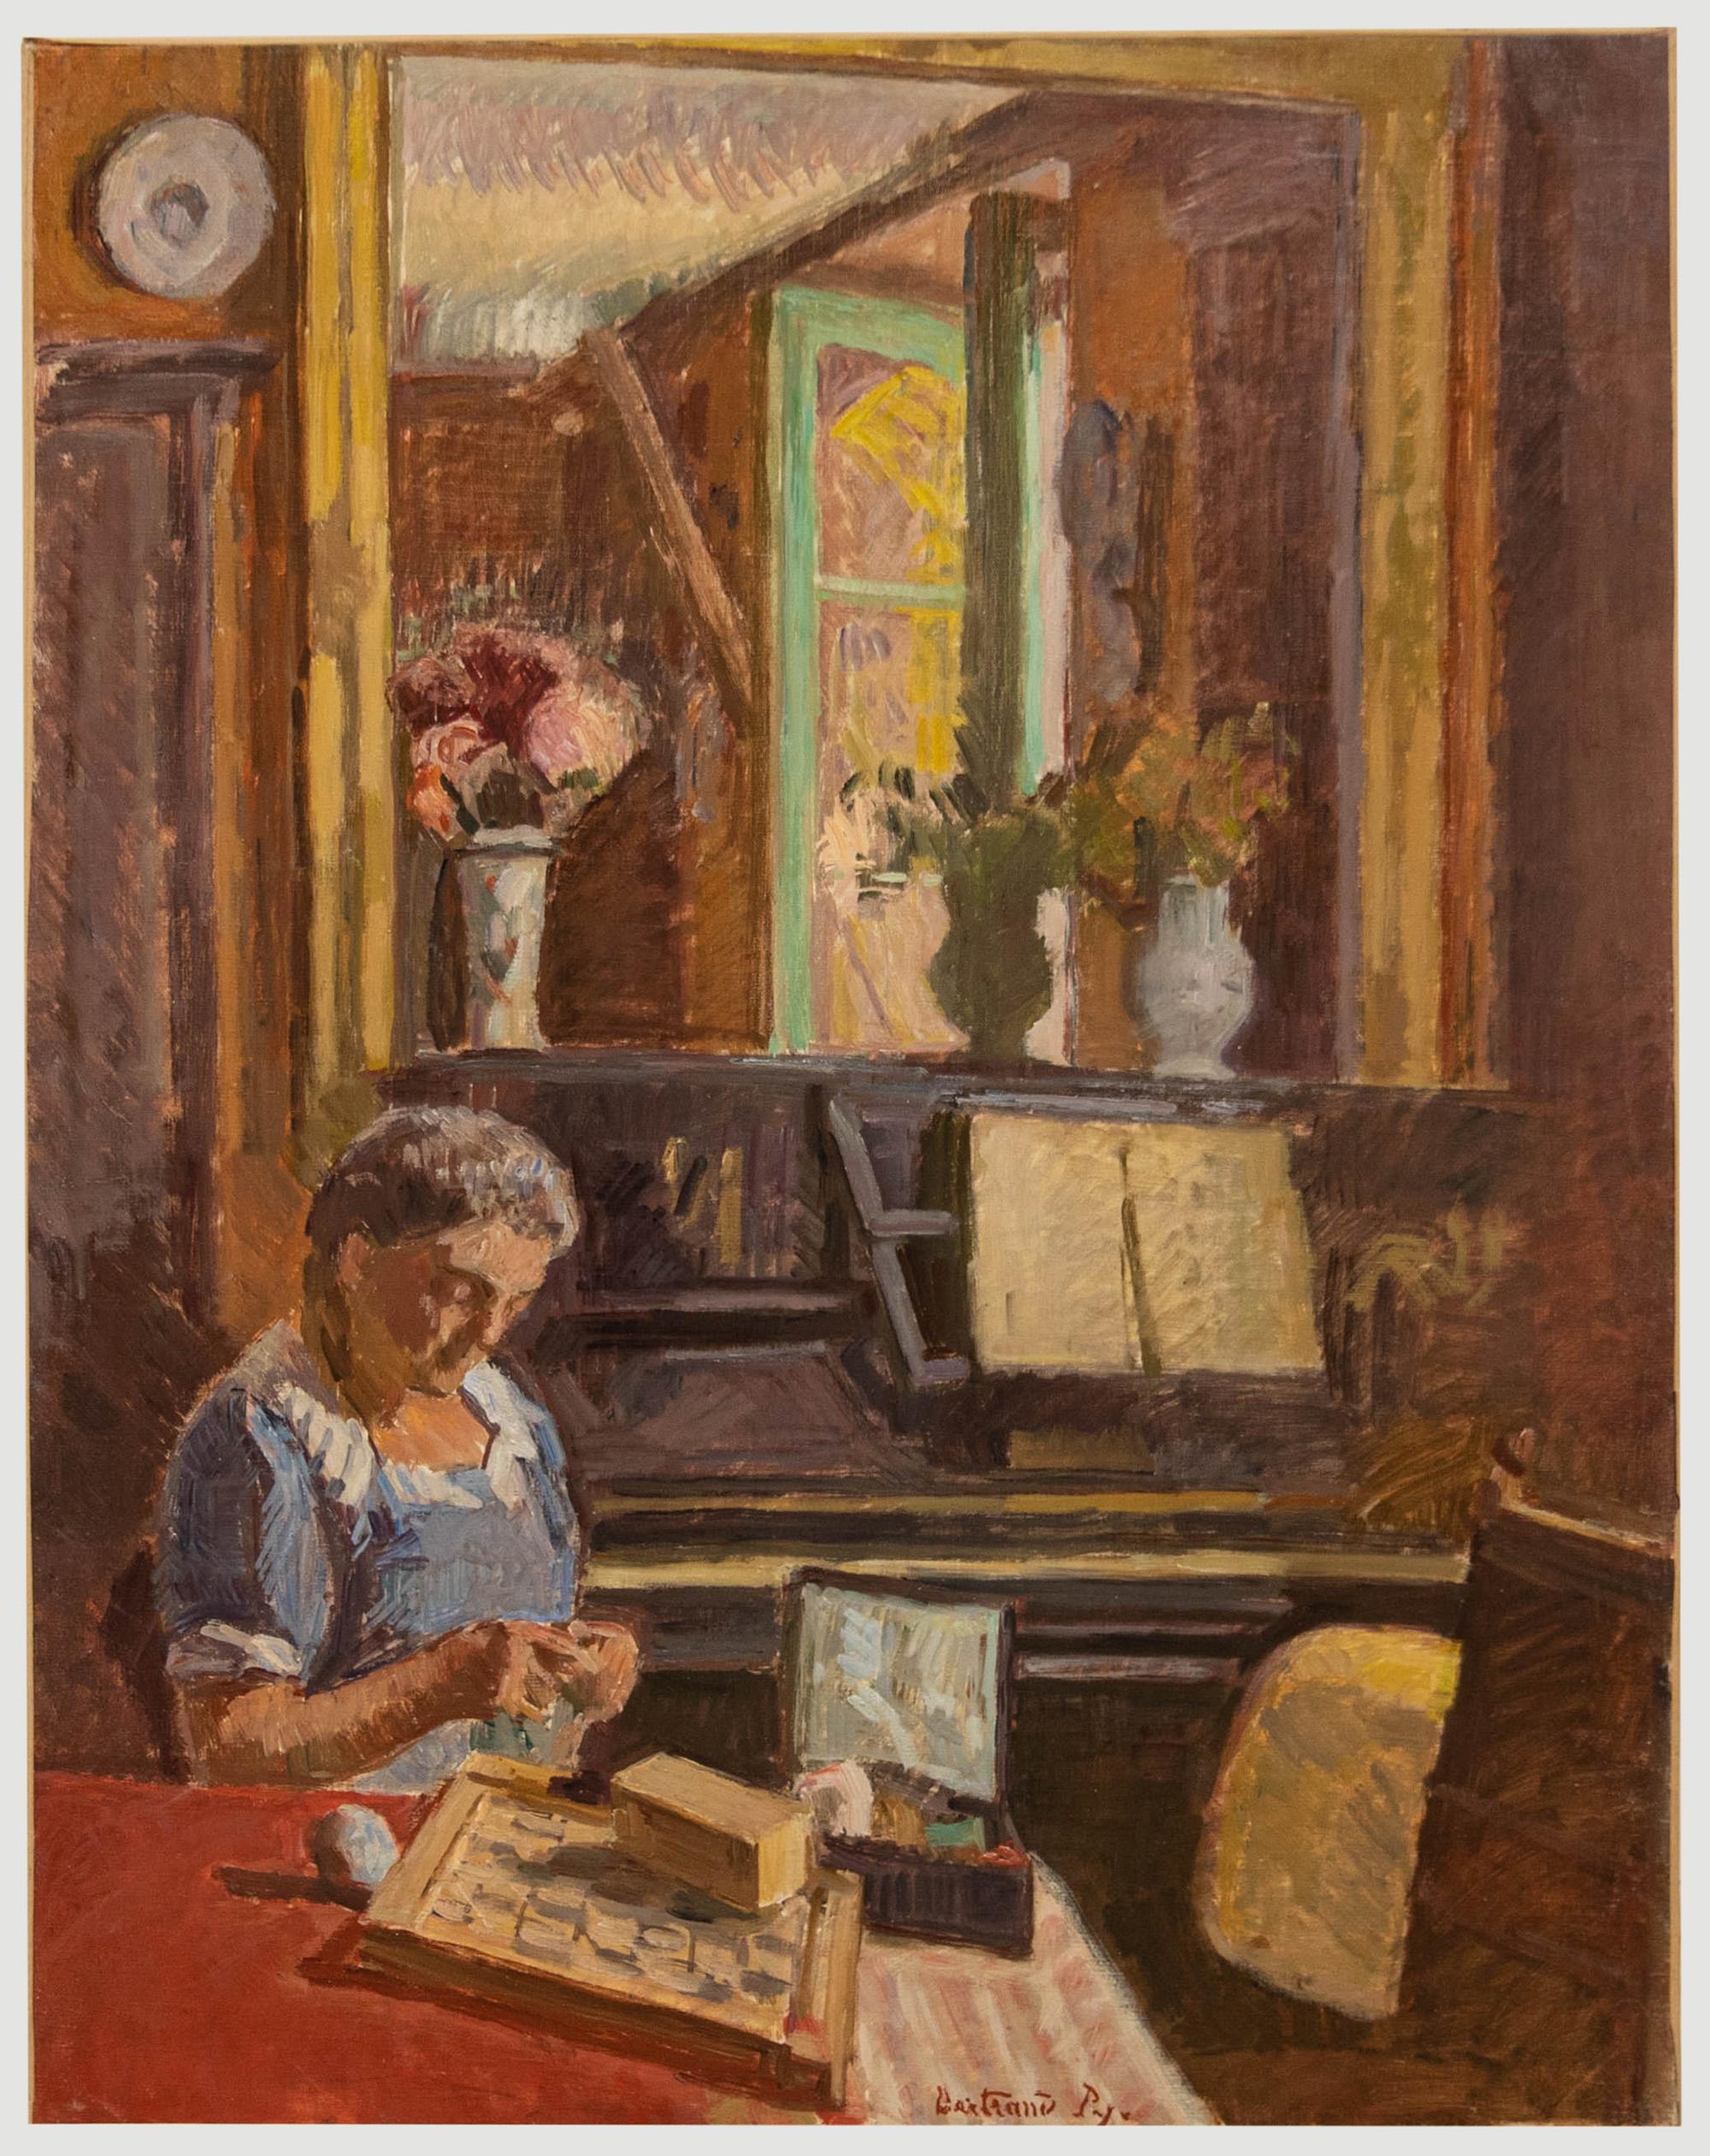 Unknown Interior Painting – Bertrand Py (1895-1973) - Ölgemälde, Die Näherin, Mitte des 20. Jahrhunderts